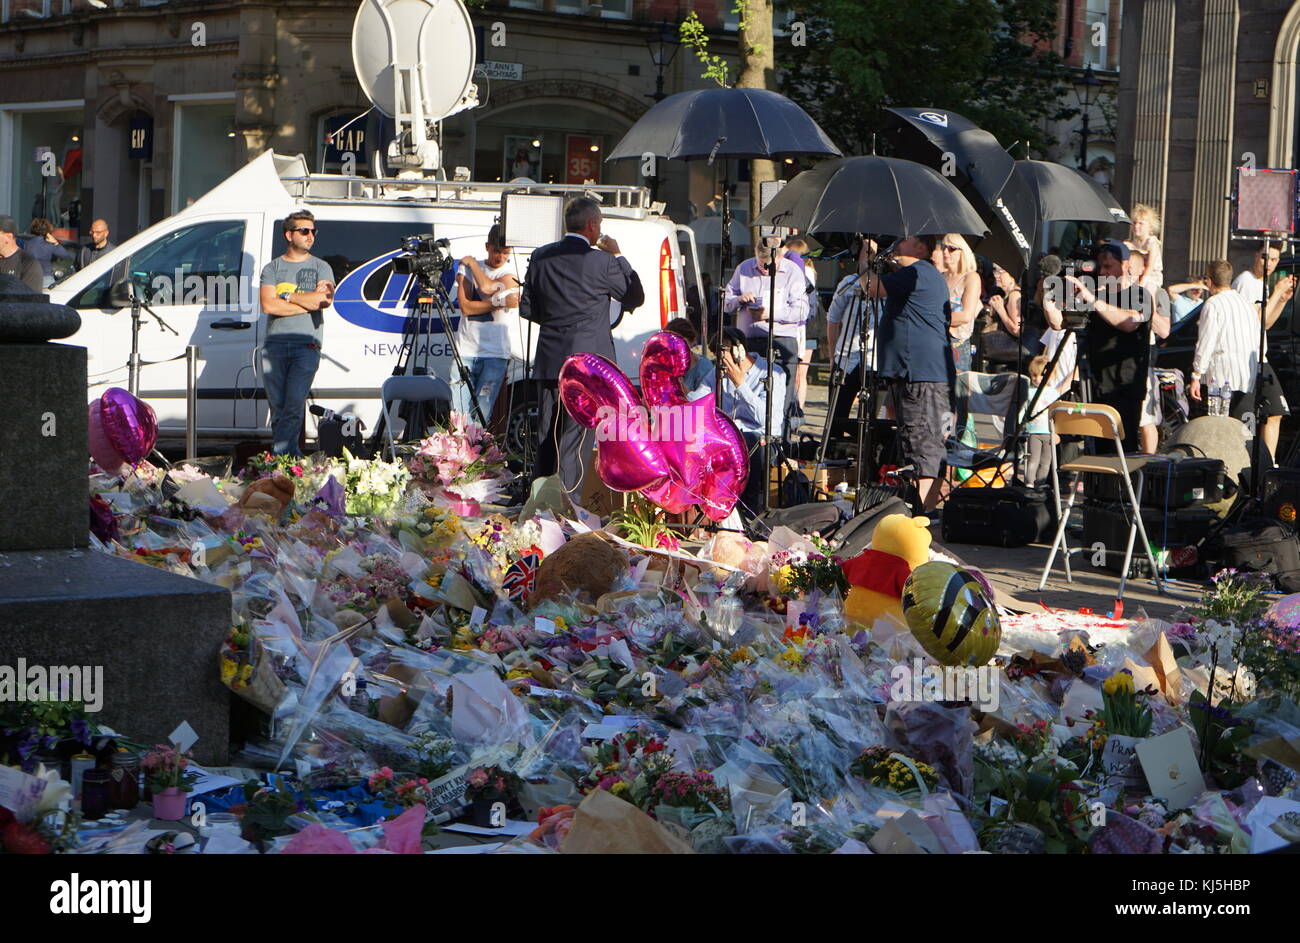 Mezzi di copertura della veglia in St Ann's Square durante i giorni seguenti il 22 maggio 2017, attentato suicida, effettuata a Manchester Arena di Manchester, Inghilterra, a seguito di un concerto del cantante americana Ariana Grande. Foto Stock